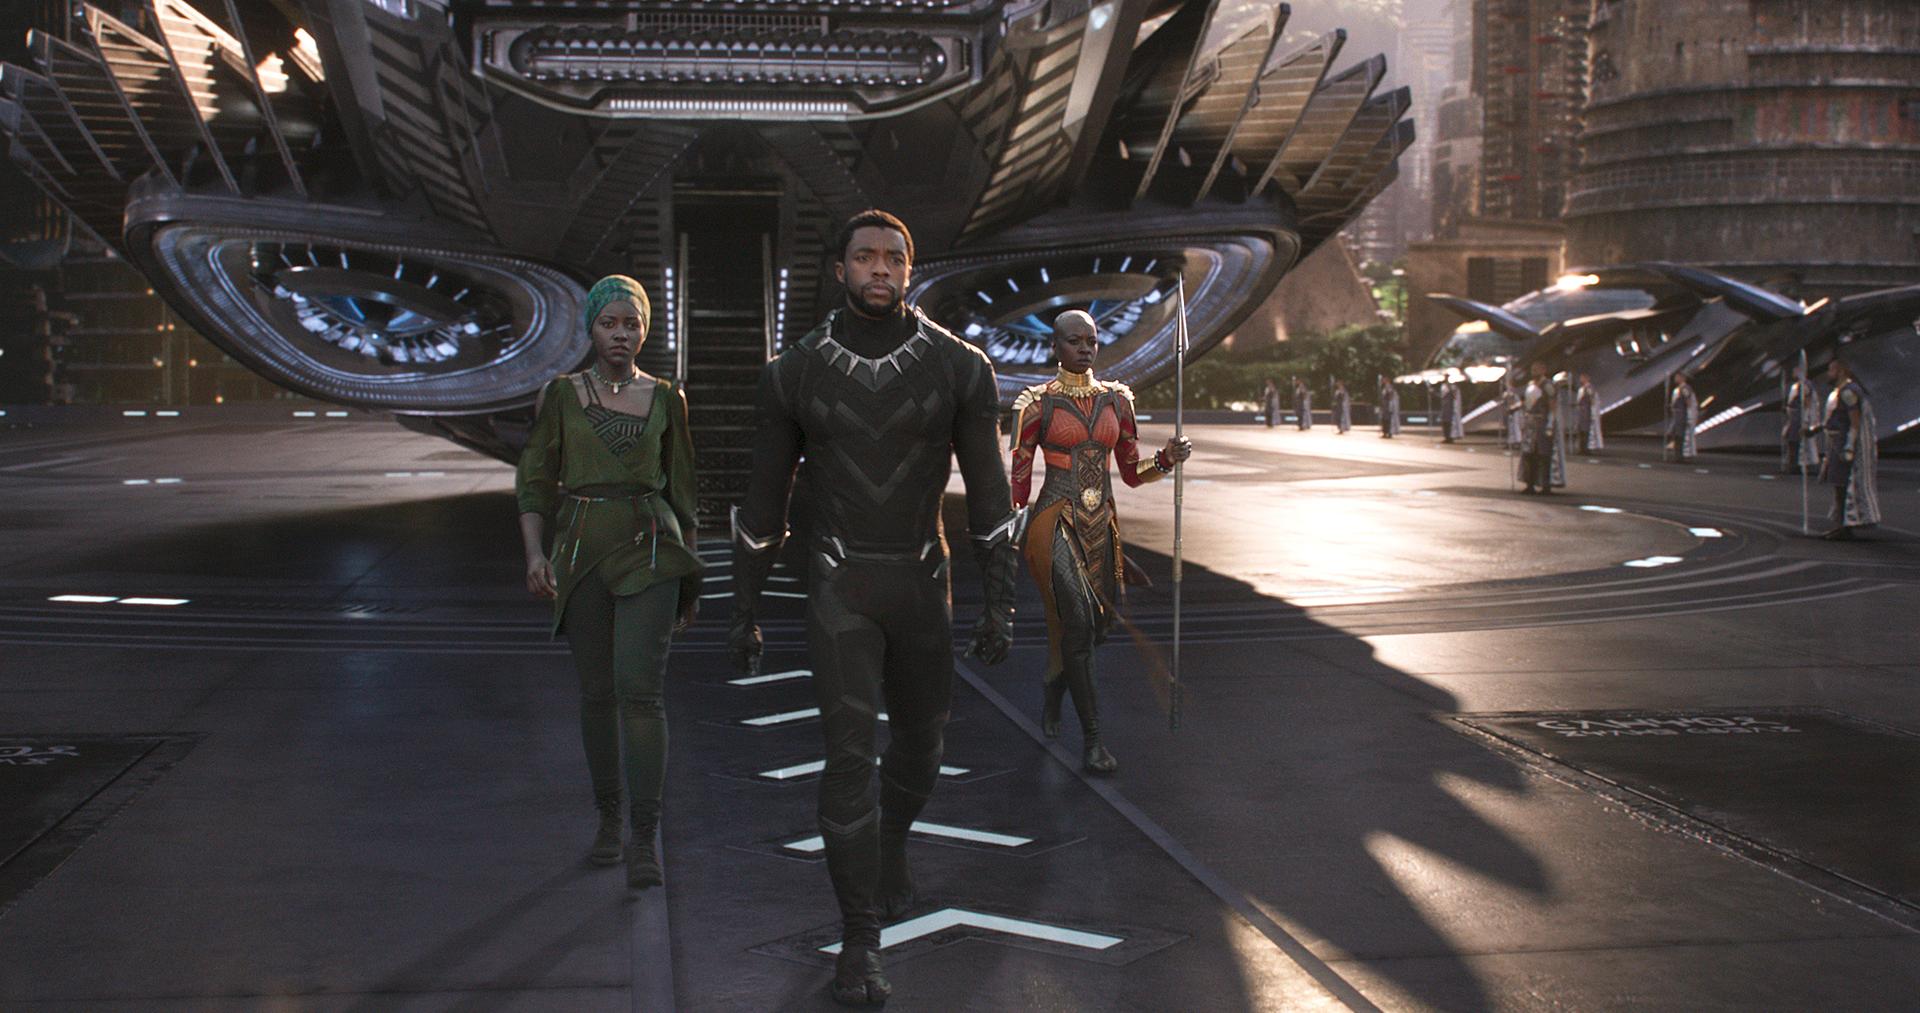 Marvel Studios’ “Black Panther.” L to R: Nakia (Lupita Nyong'o), T'Challa/Black Panther (Chadwick Boseman) and Okoye (Danai Gurira).